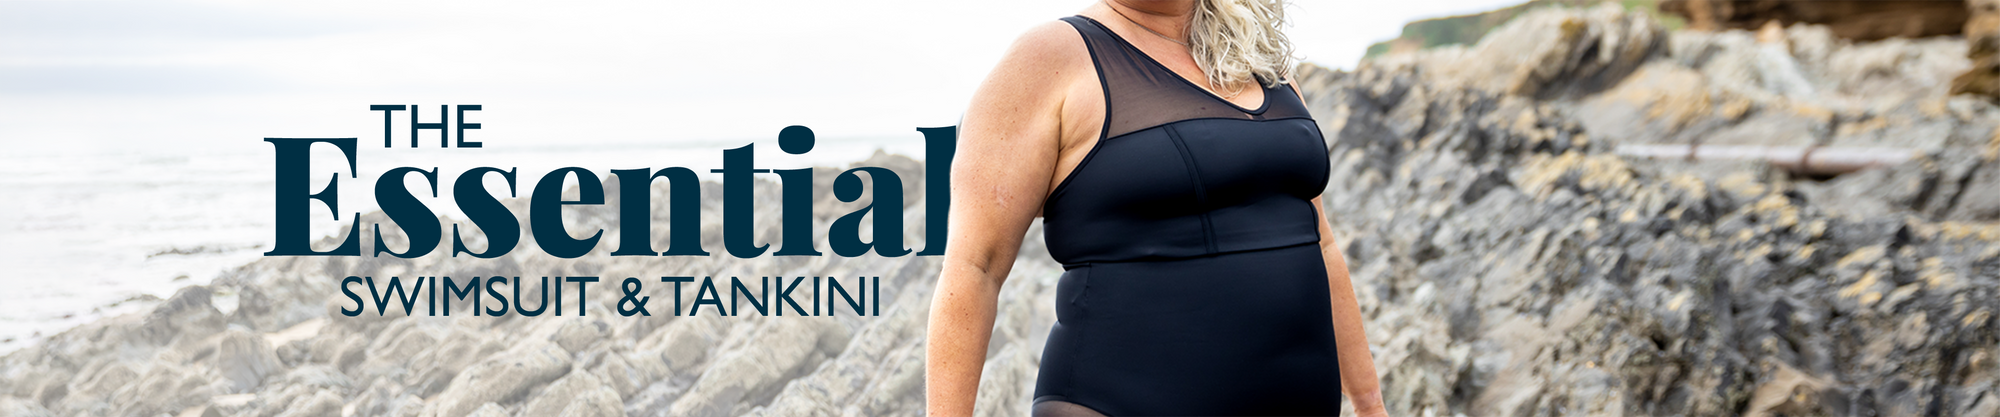 The Essential Swimsuit & Tankini